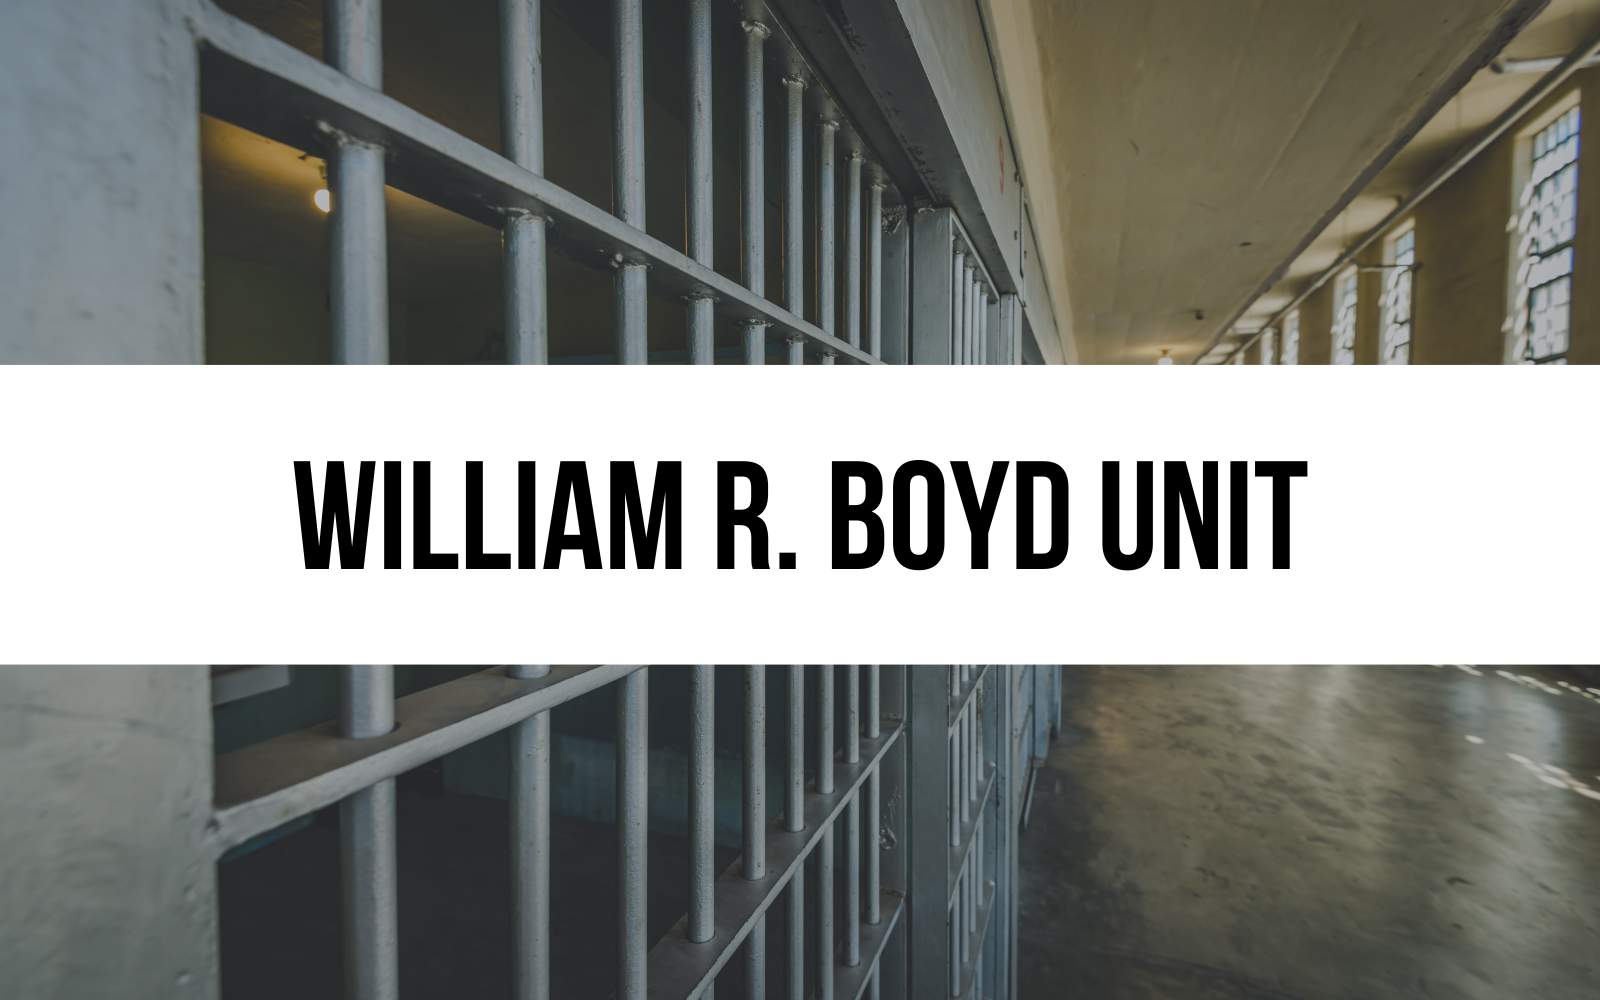 William R. Boyd Unit